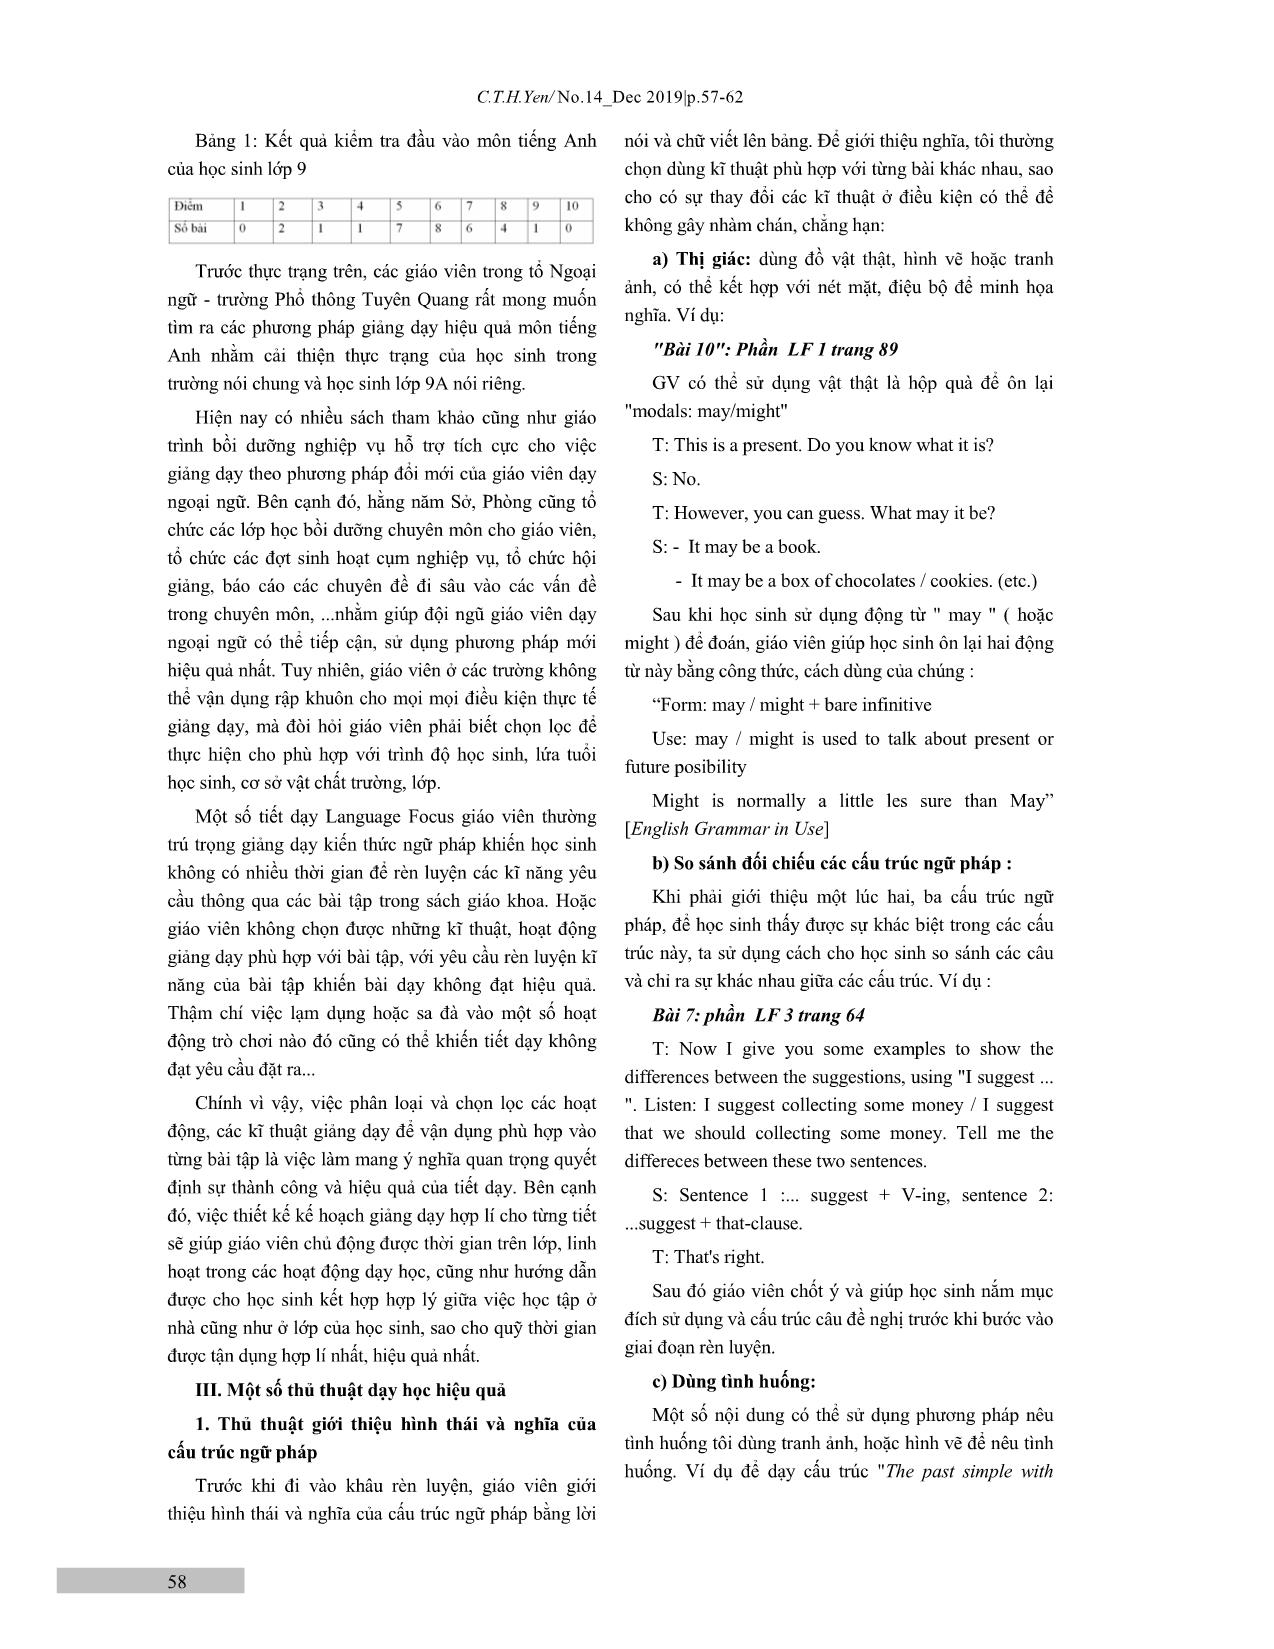 Một số thủ thuật dạy phần Language Focus trong sách Tiếng Anh lớp 9 trang 2